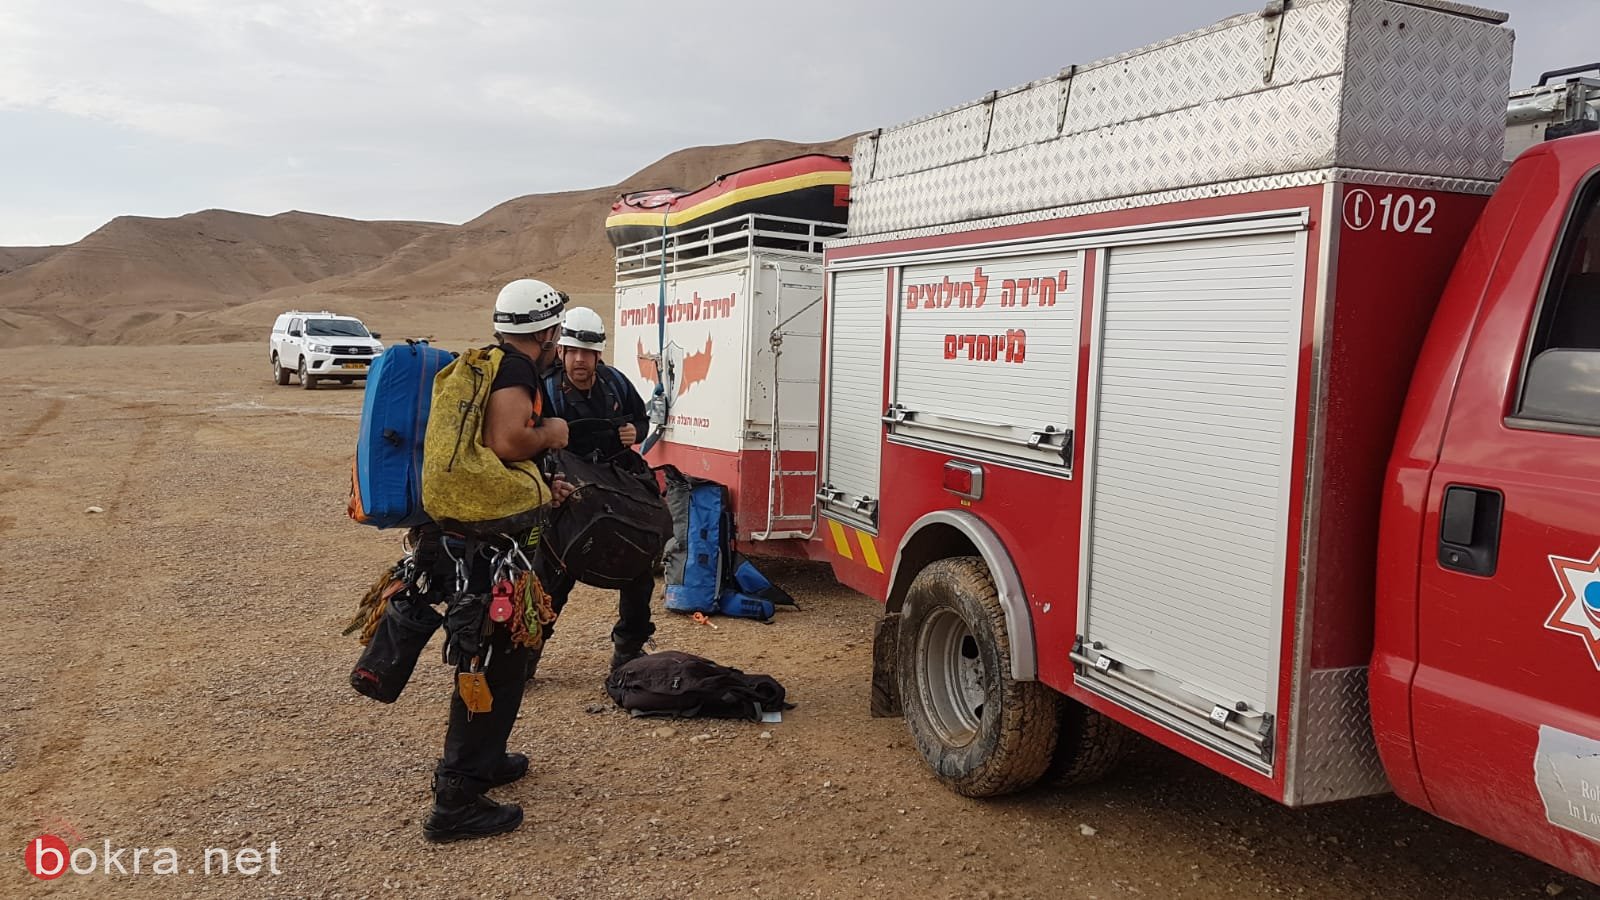 بسبب الفياضانات إنقاذ 4 اشخاص عالقين في مجرى وادي "اوج" شمالي البحر الميت-3